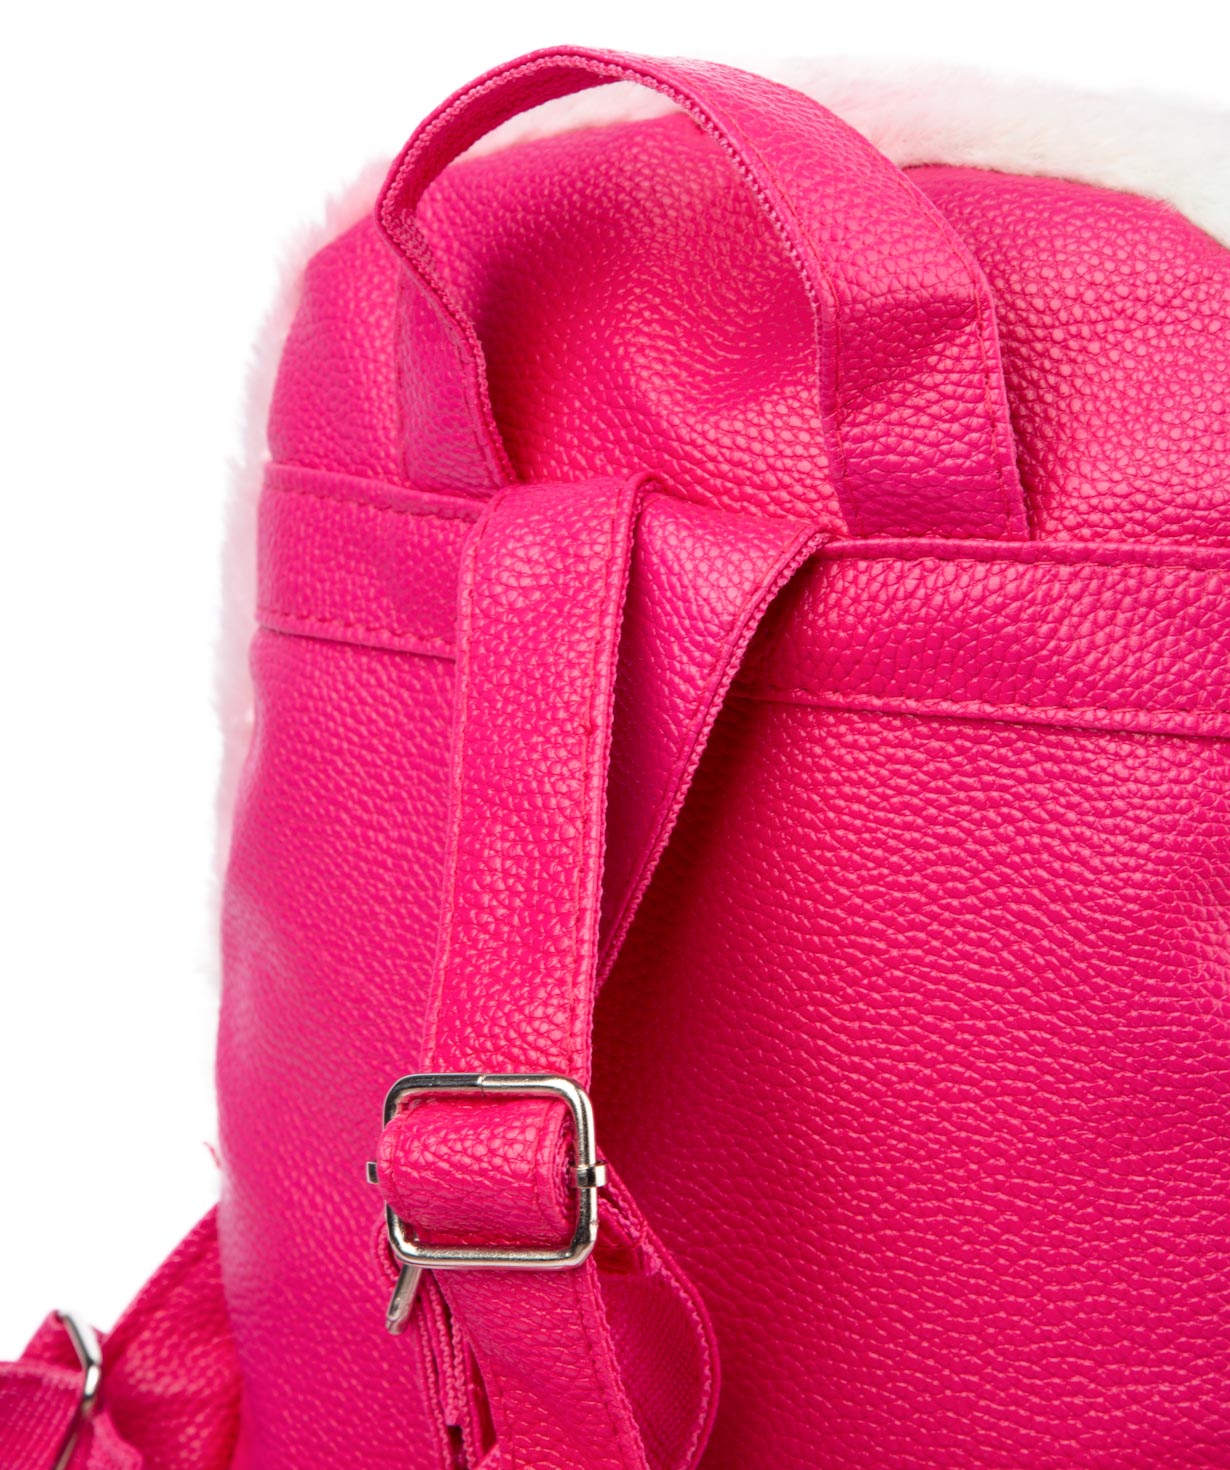 Backpack `Kitten` for children